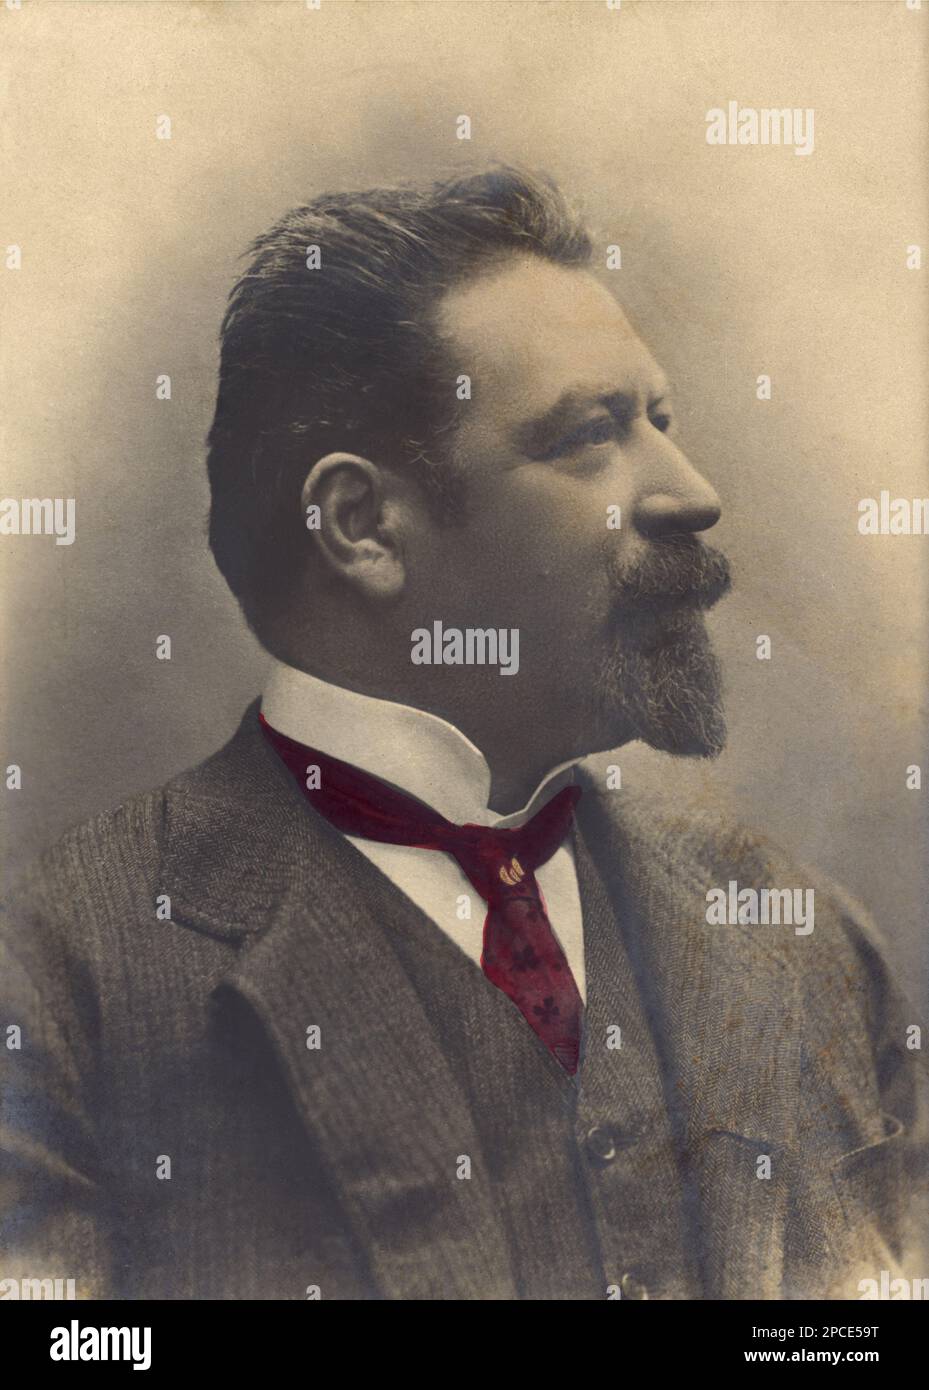 1900 Ca, ITALY : El célebre cantante italiano tenore FRANCESCO TAMAGNO ( 1850 - 1905 ). El tenor dramático más famoso de su edad. Mejor conocido como el creador de Giuseppe Verdi 's OTELLO . - CANTANTE LIRICA - ÓPERA - MÚSICA CLÁSICA - clásica - Teatro - teatro - teatro - teatro - retrato - ritratto - cantante lirico - clásica - collar - colletto - profilo - perfil - BARBA - corbata - cravatta ---- Archivio GBB Foto de stock